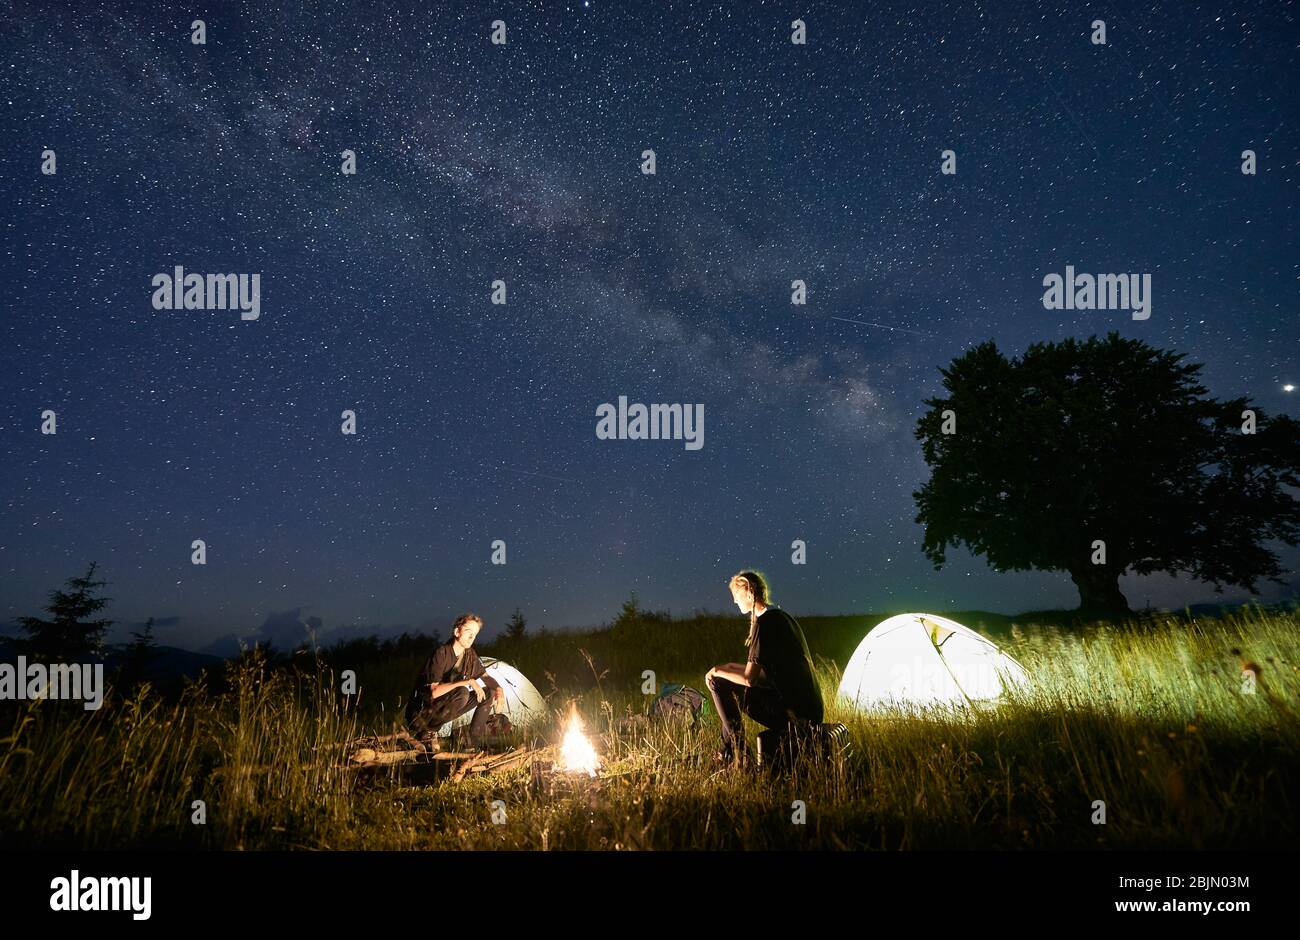 Randonneurs assis devant l'un l'autre sur un banc de grumes, en regardant le feu ensemble à côté du camp et des tentes dans la nuit. Silhouette d'un grand arbre sur fond, voie lactée et ciel étoilé au-dessus d'eux Banque D'Images